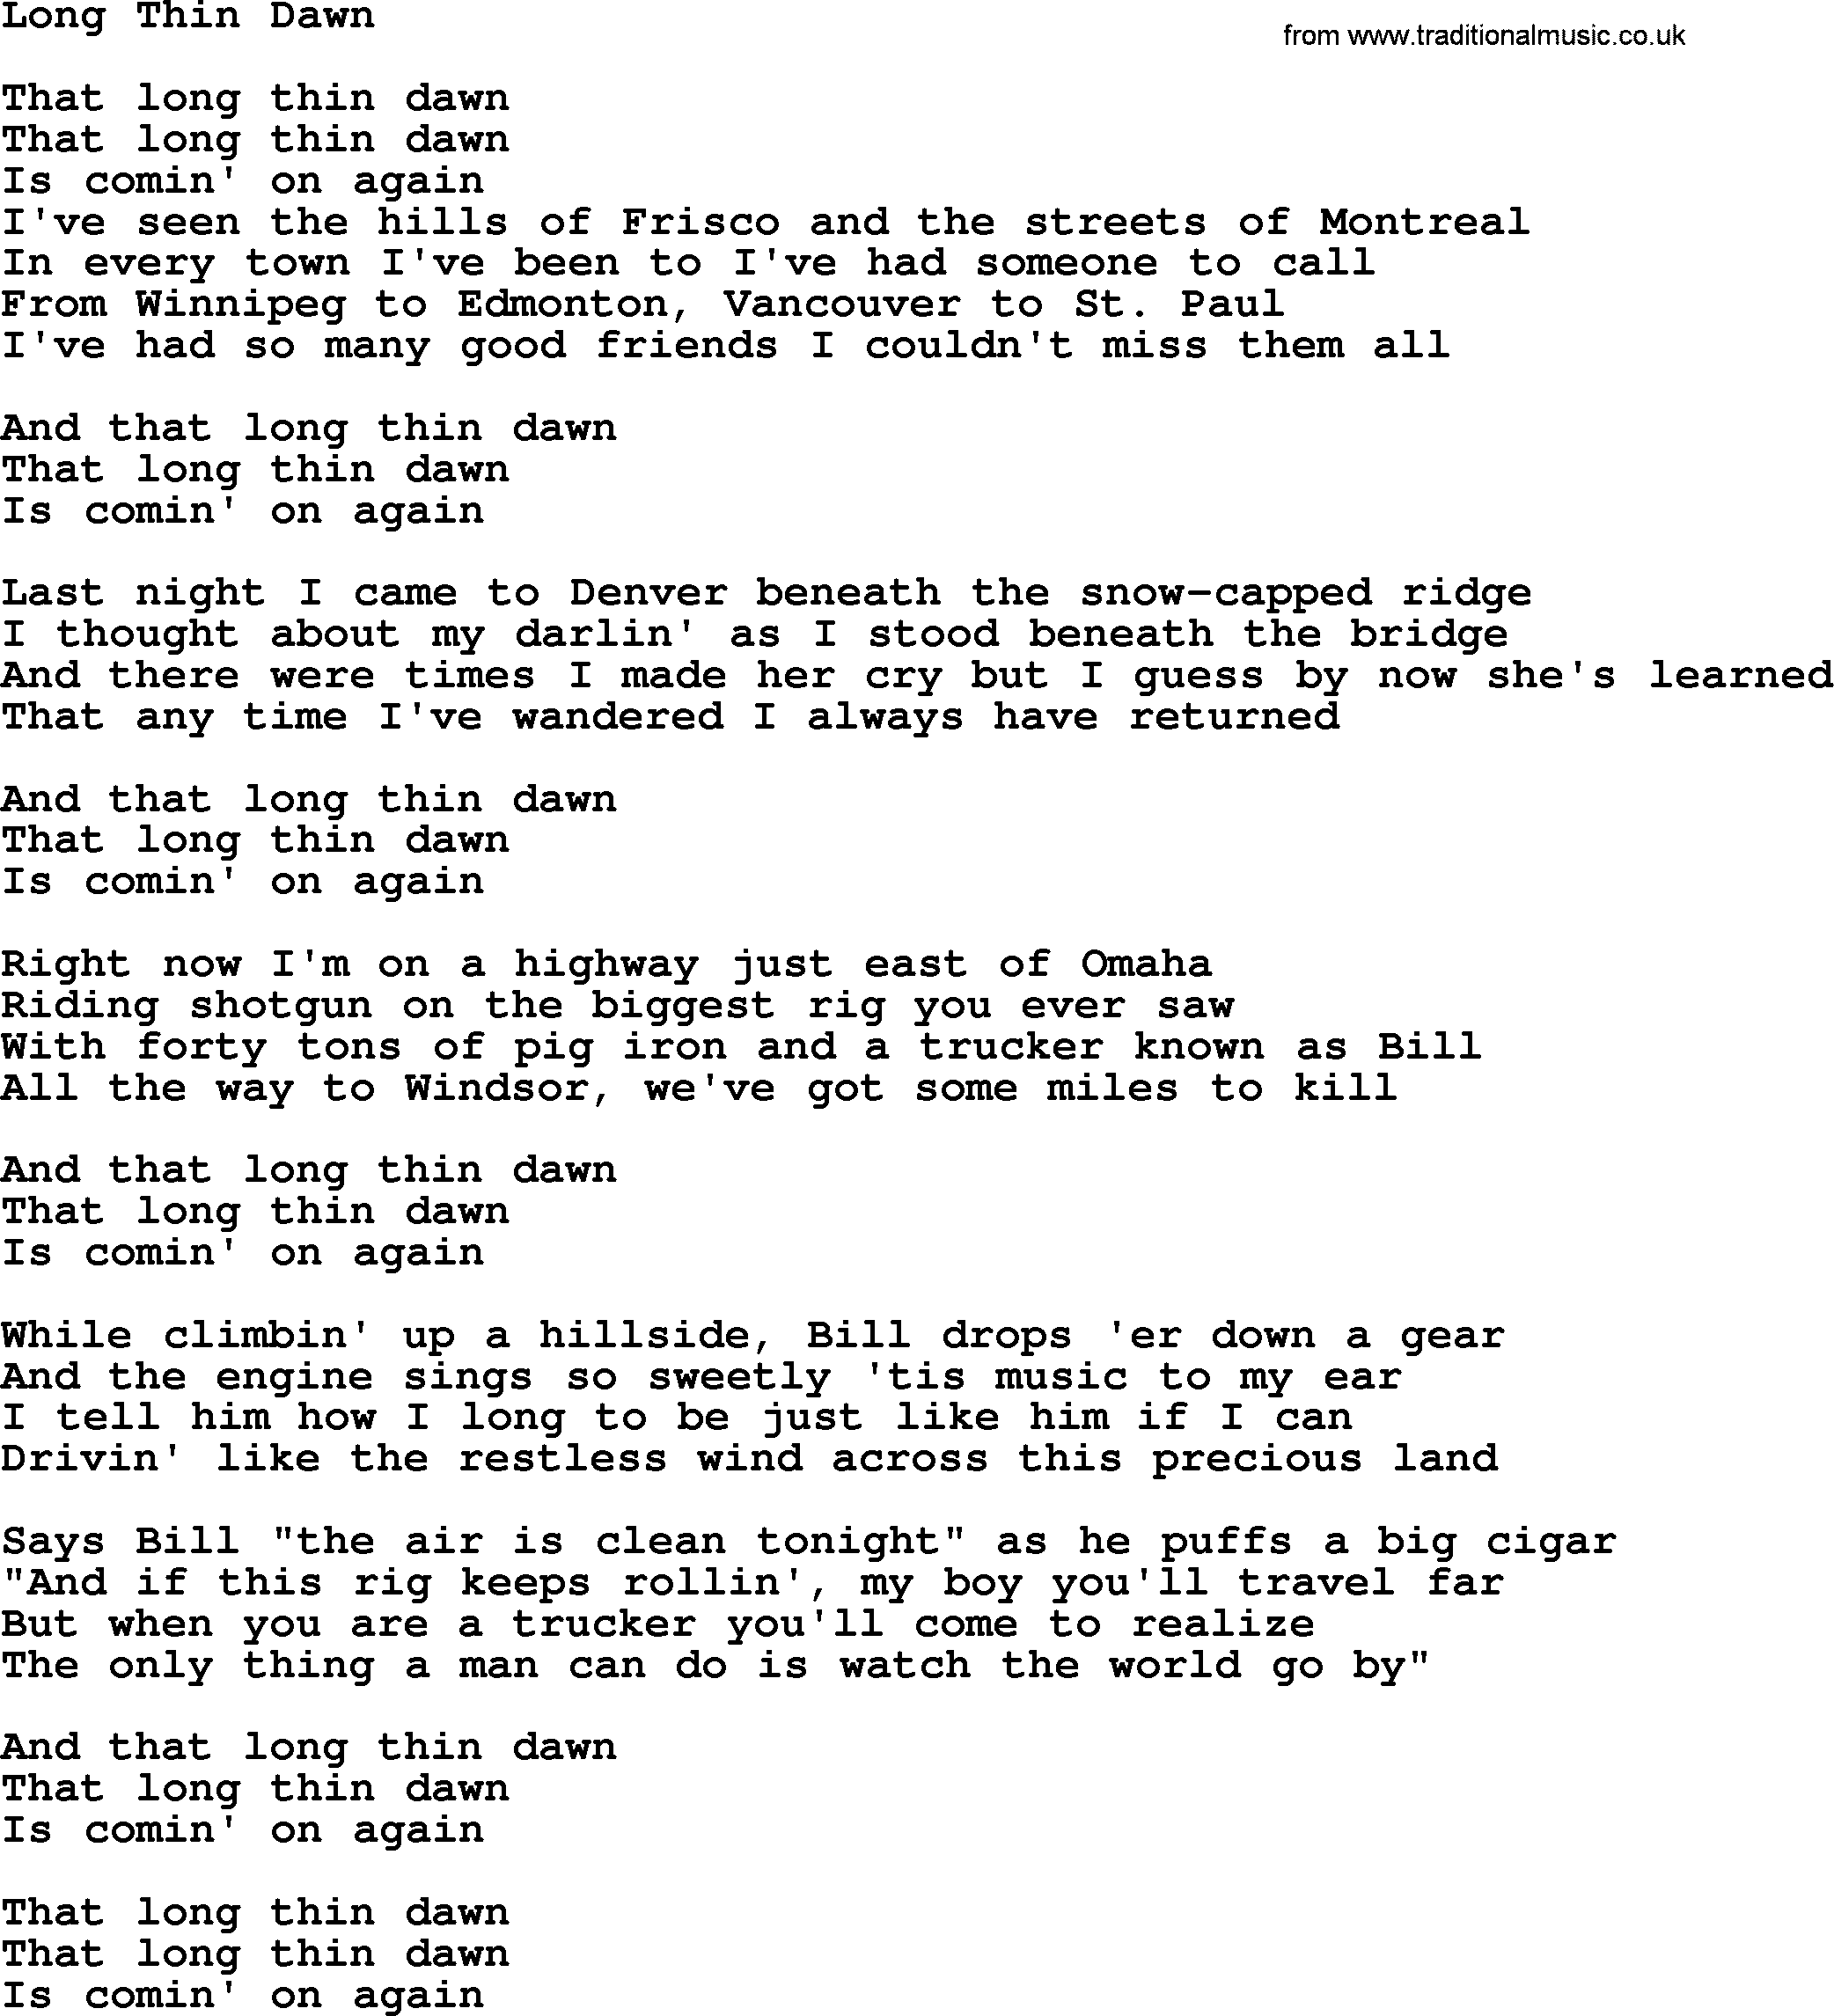 Gordon Lightfoot song Long Thin Dawn, lyrics